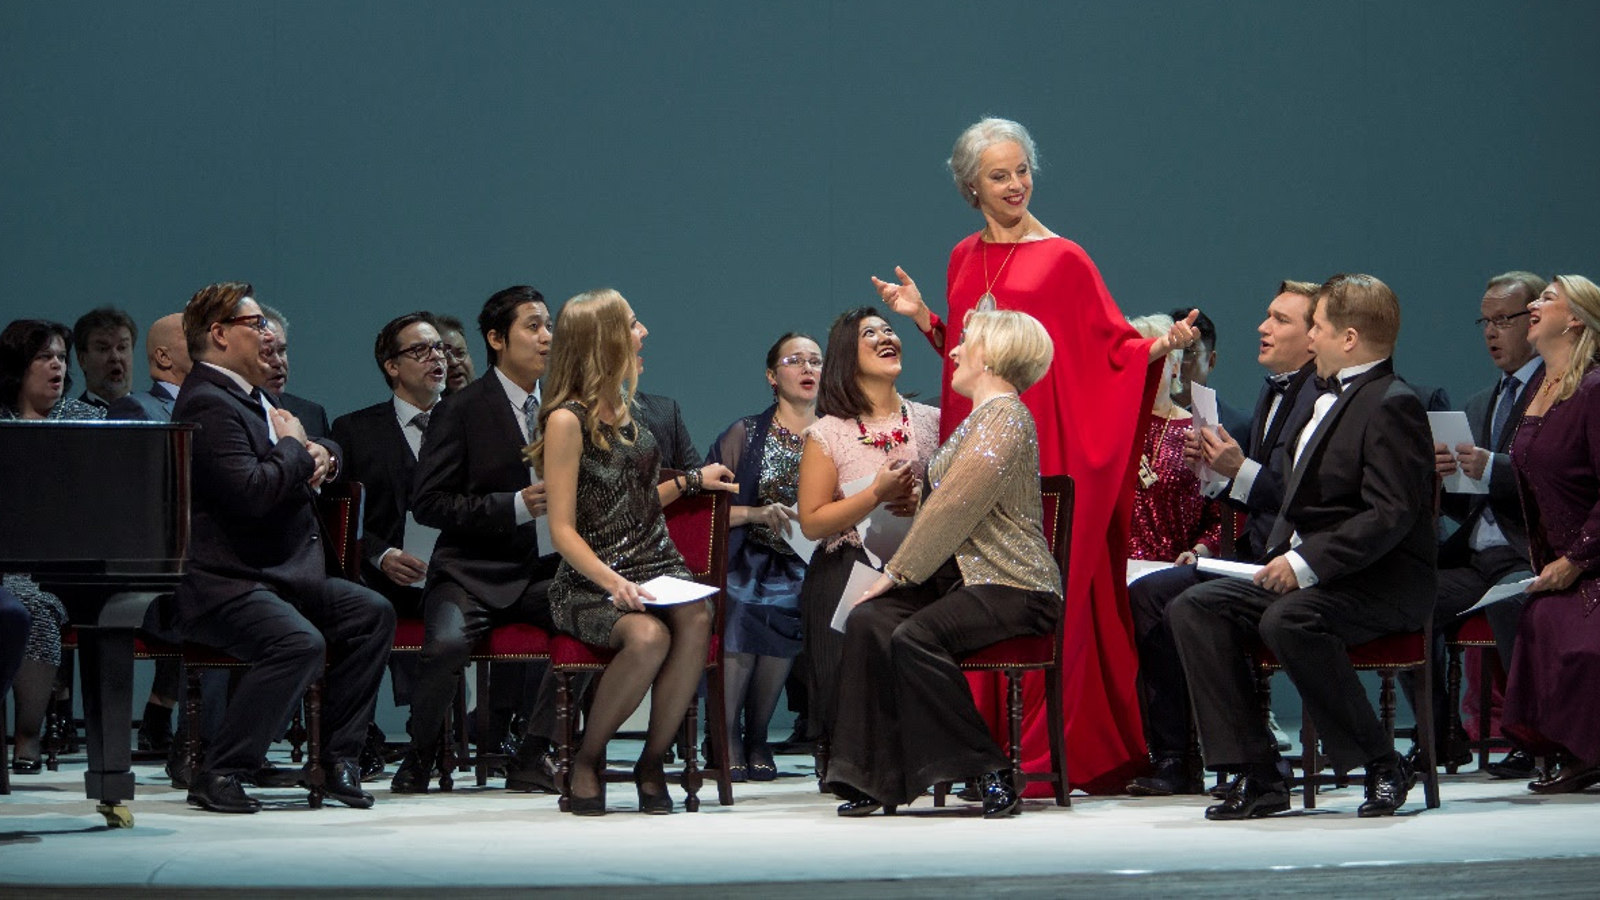 Kuvassa on mustissa puvuissa olevia ihmisiä, jotka istuvat.  Heidän keskellään seisoo Anne Sofie von Otter punaisessa, pitkässä puvussa.